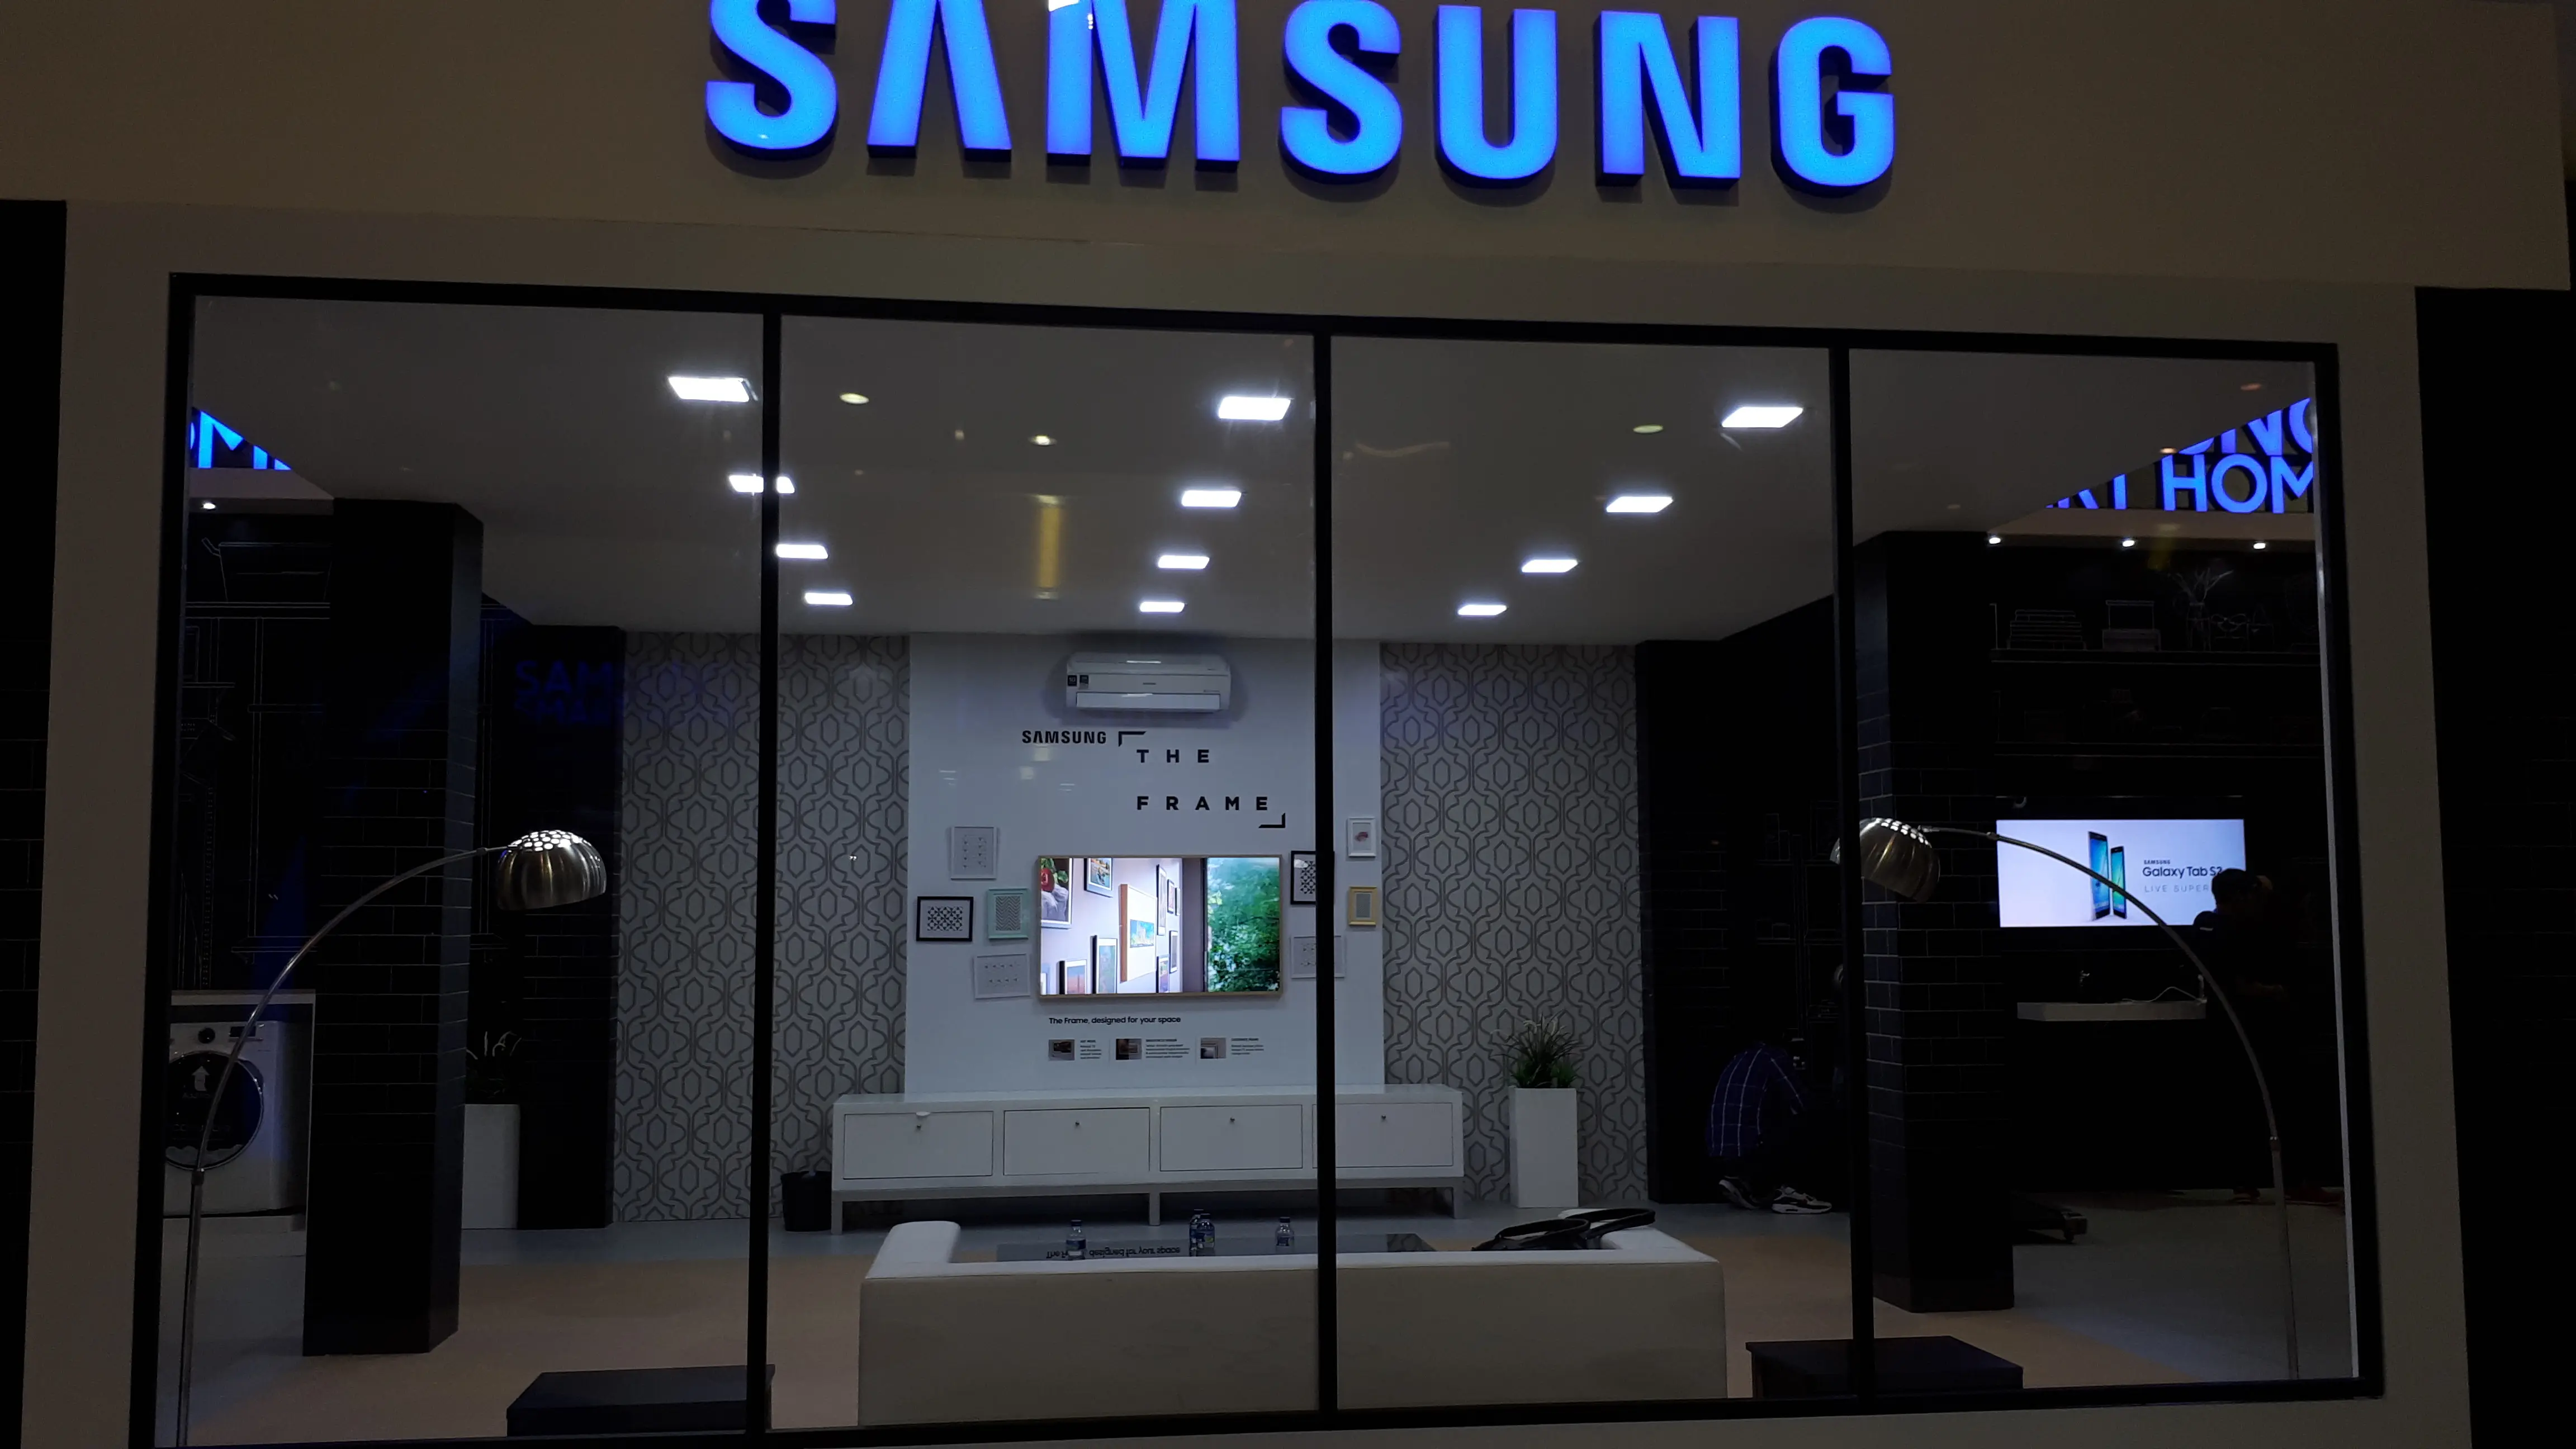  Konsep smart home yang ditampilkan Samsung booth Teknopolis. (Liputan6.com/Agustinus M Damar)